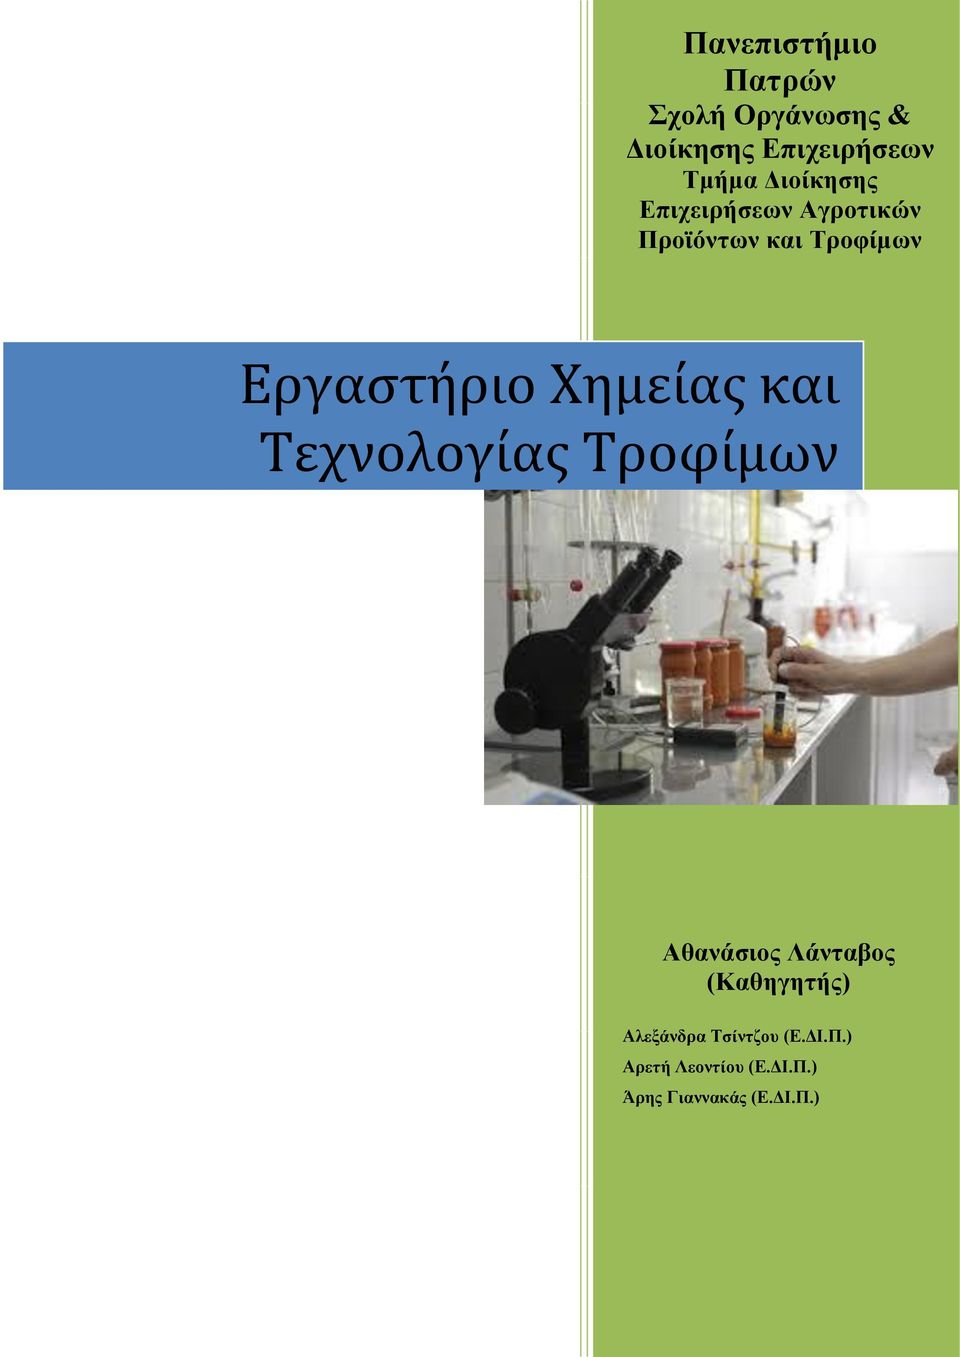 Χημείας και Τεχνολογίας Τροφίμων Αθανάσιος Λάνταβος (Καθηγητής)